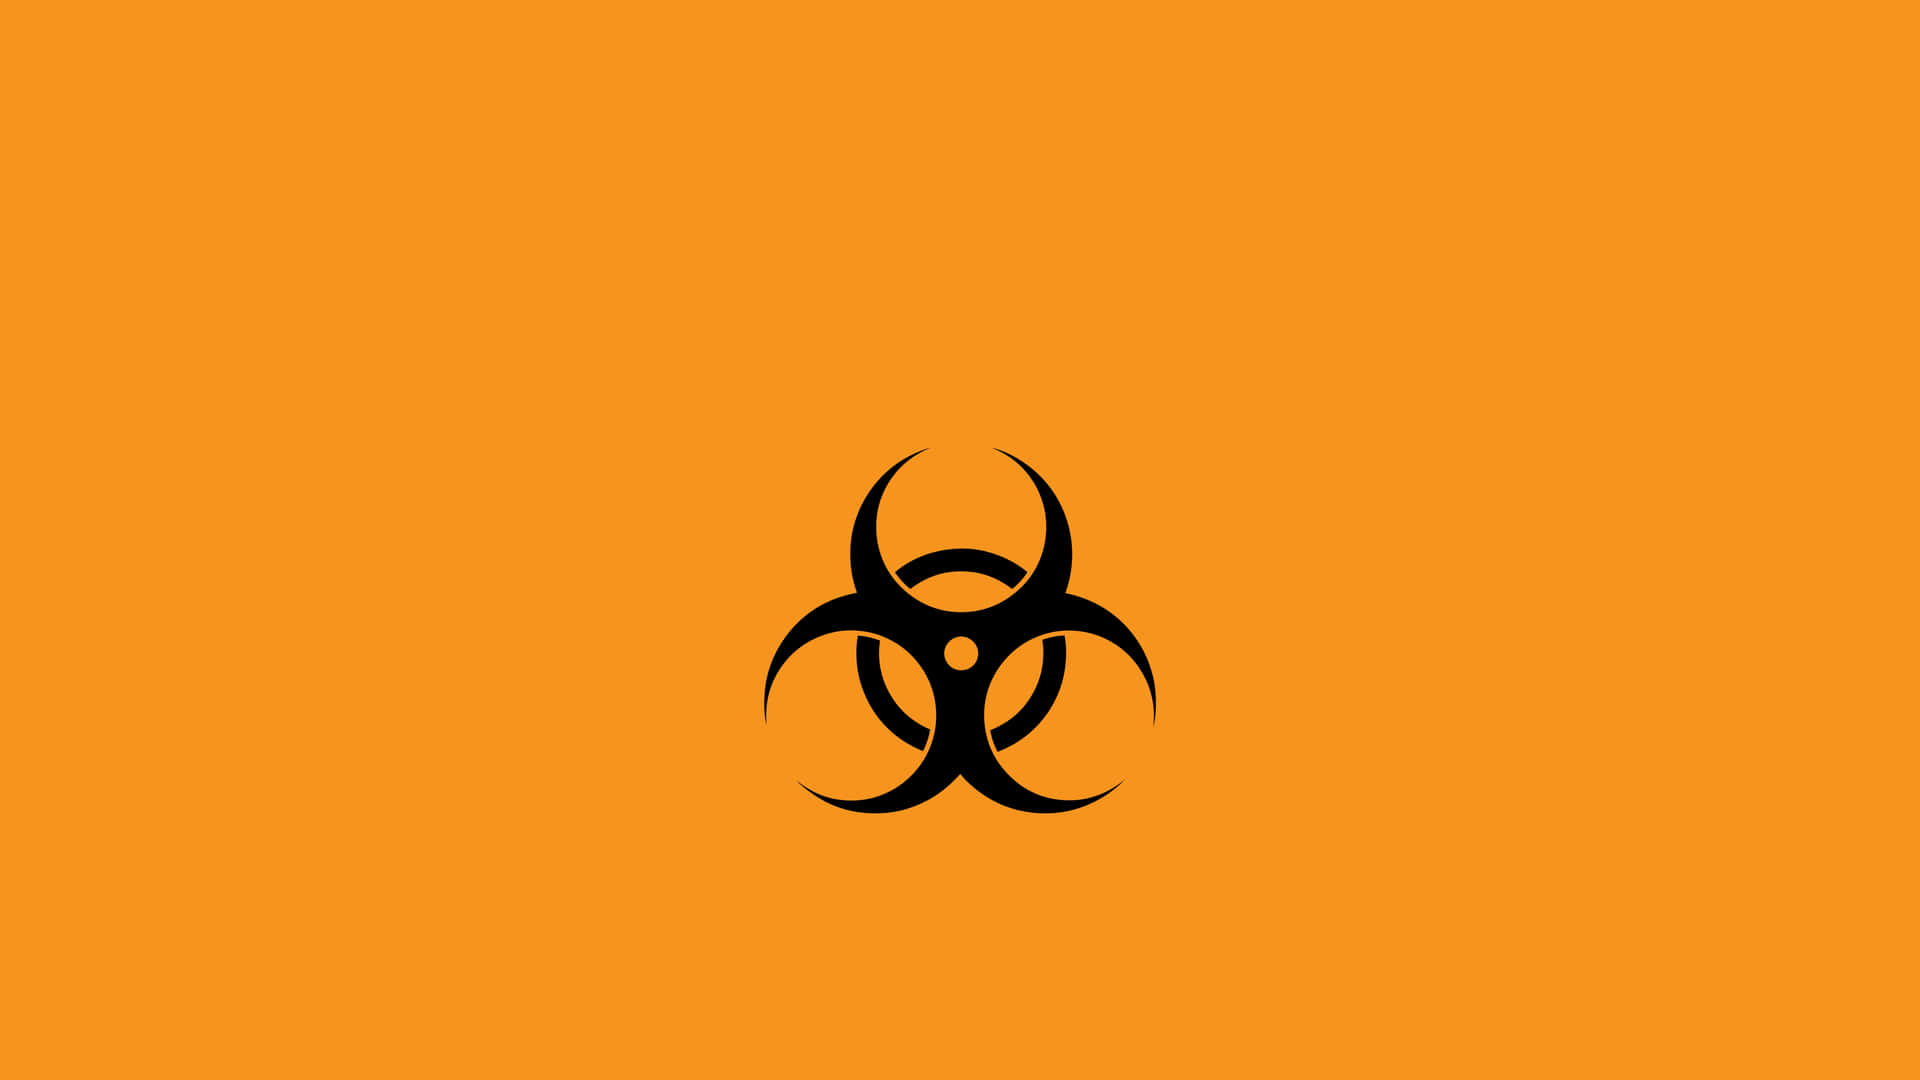 Biohazard Symbol On An Orange Background Wallpaper